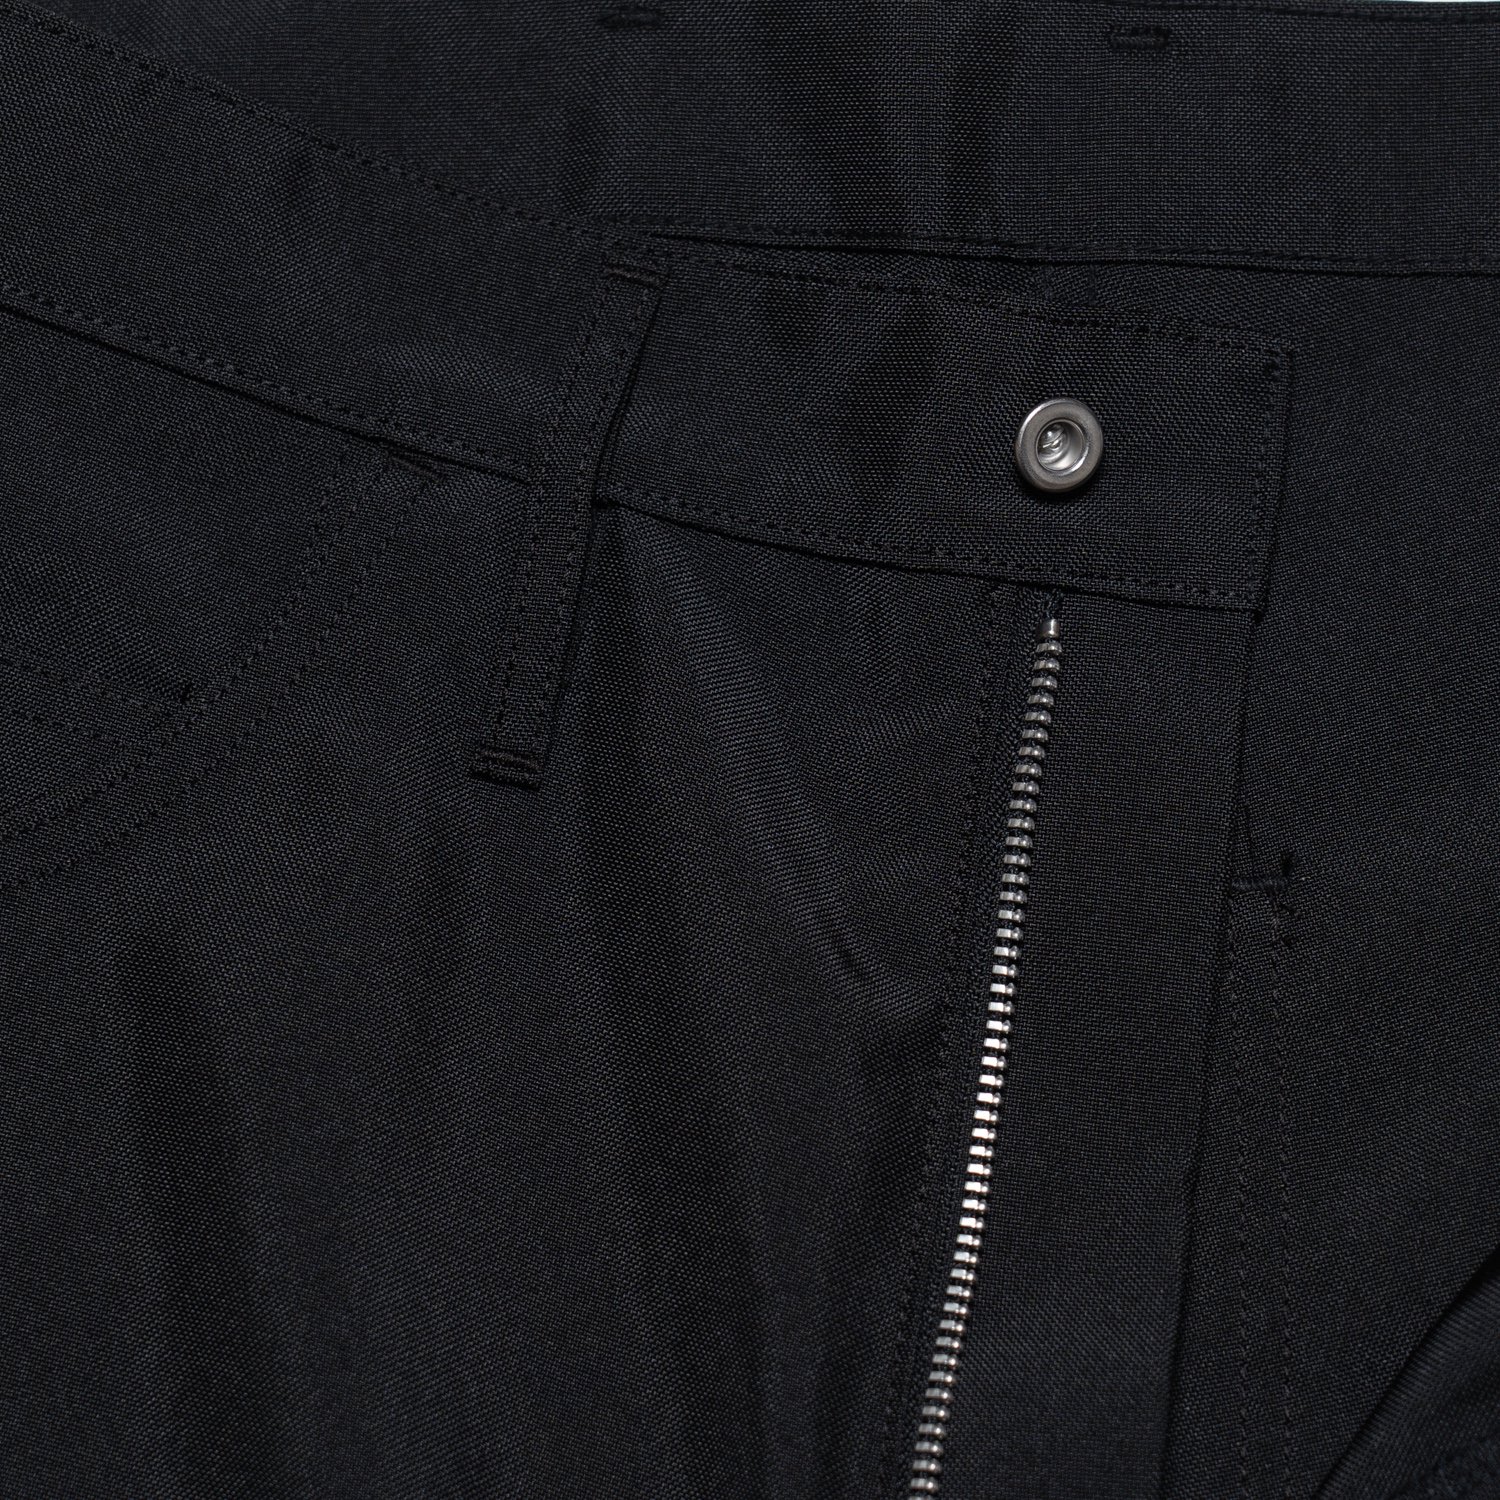 TUKI * 0164 5pocket Shorts Polyester Canvas * Black